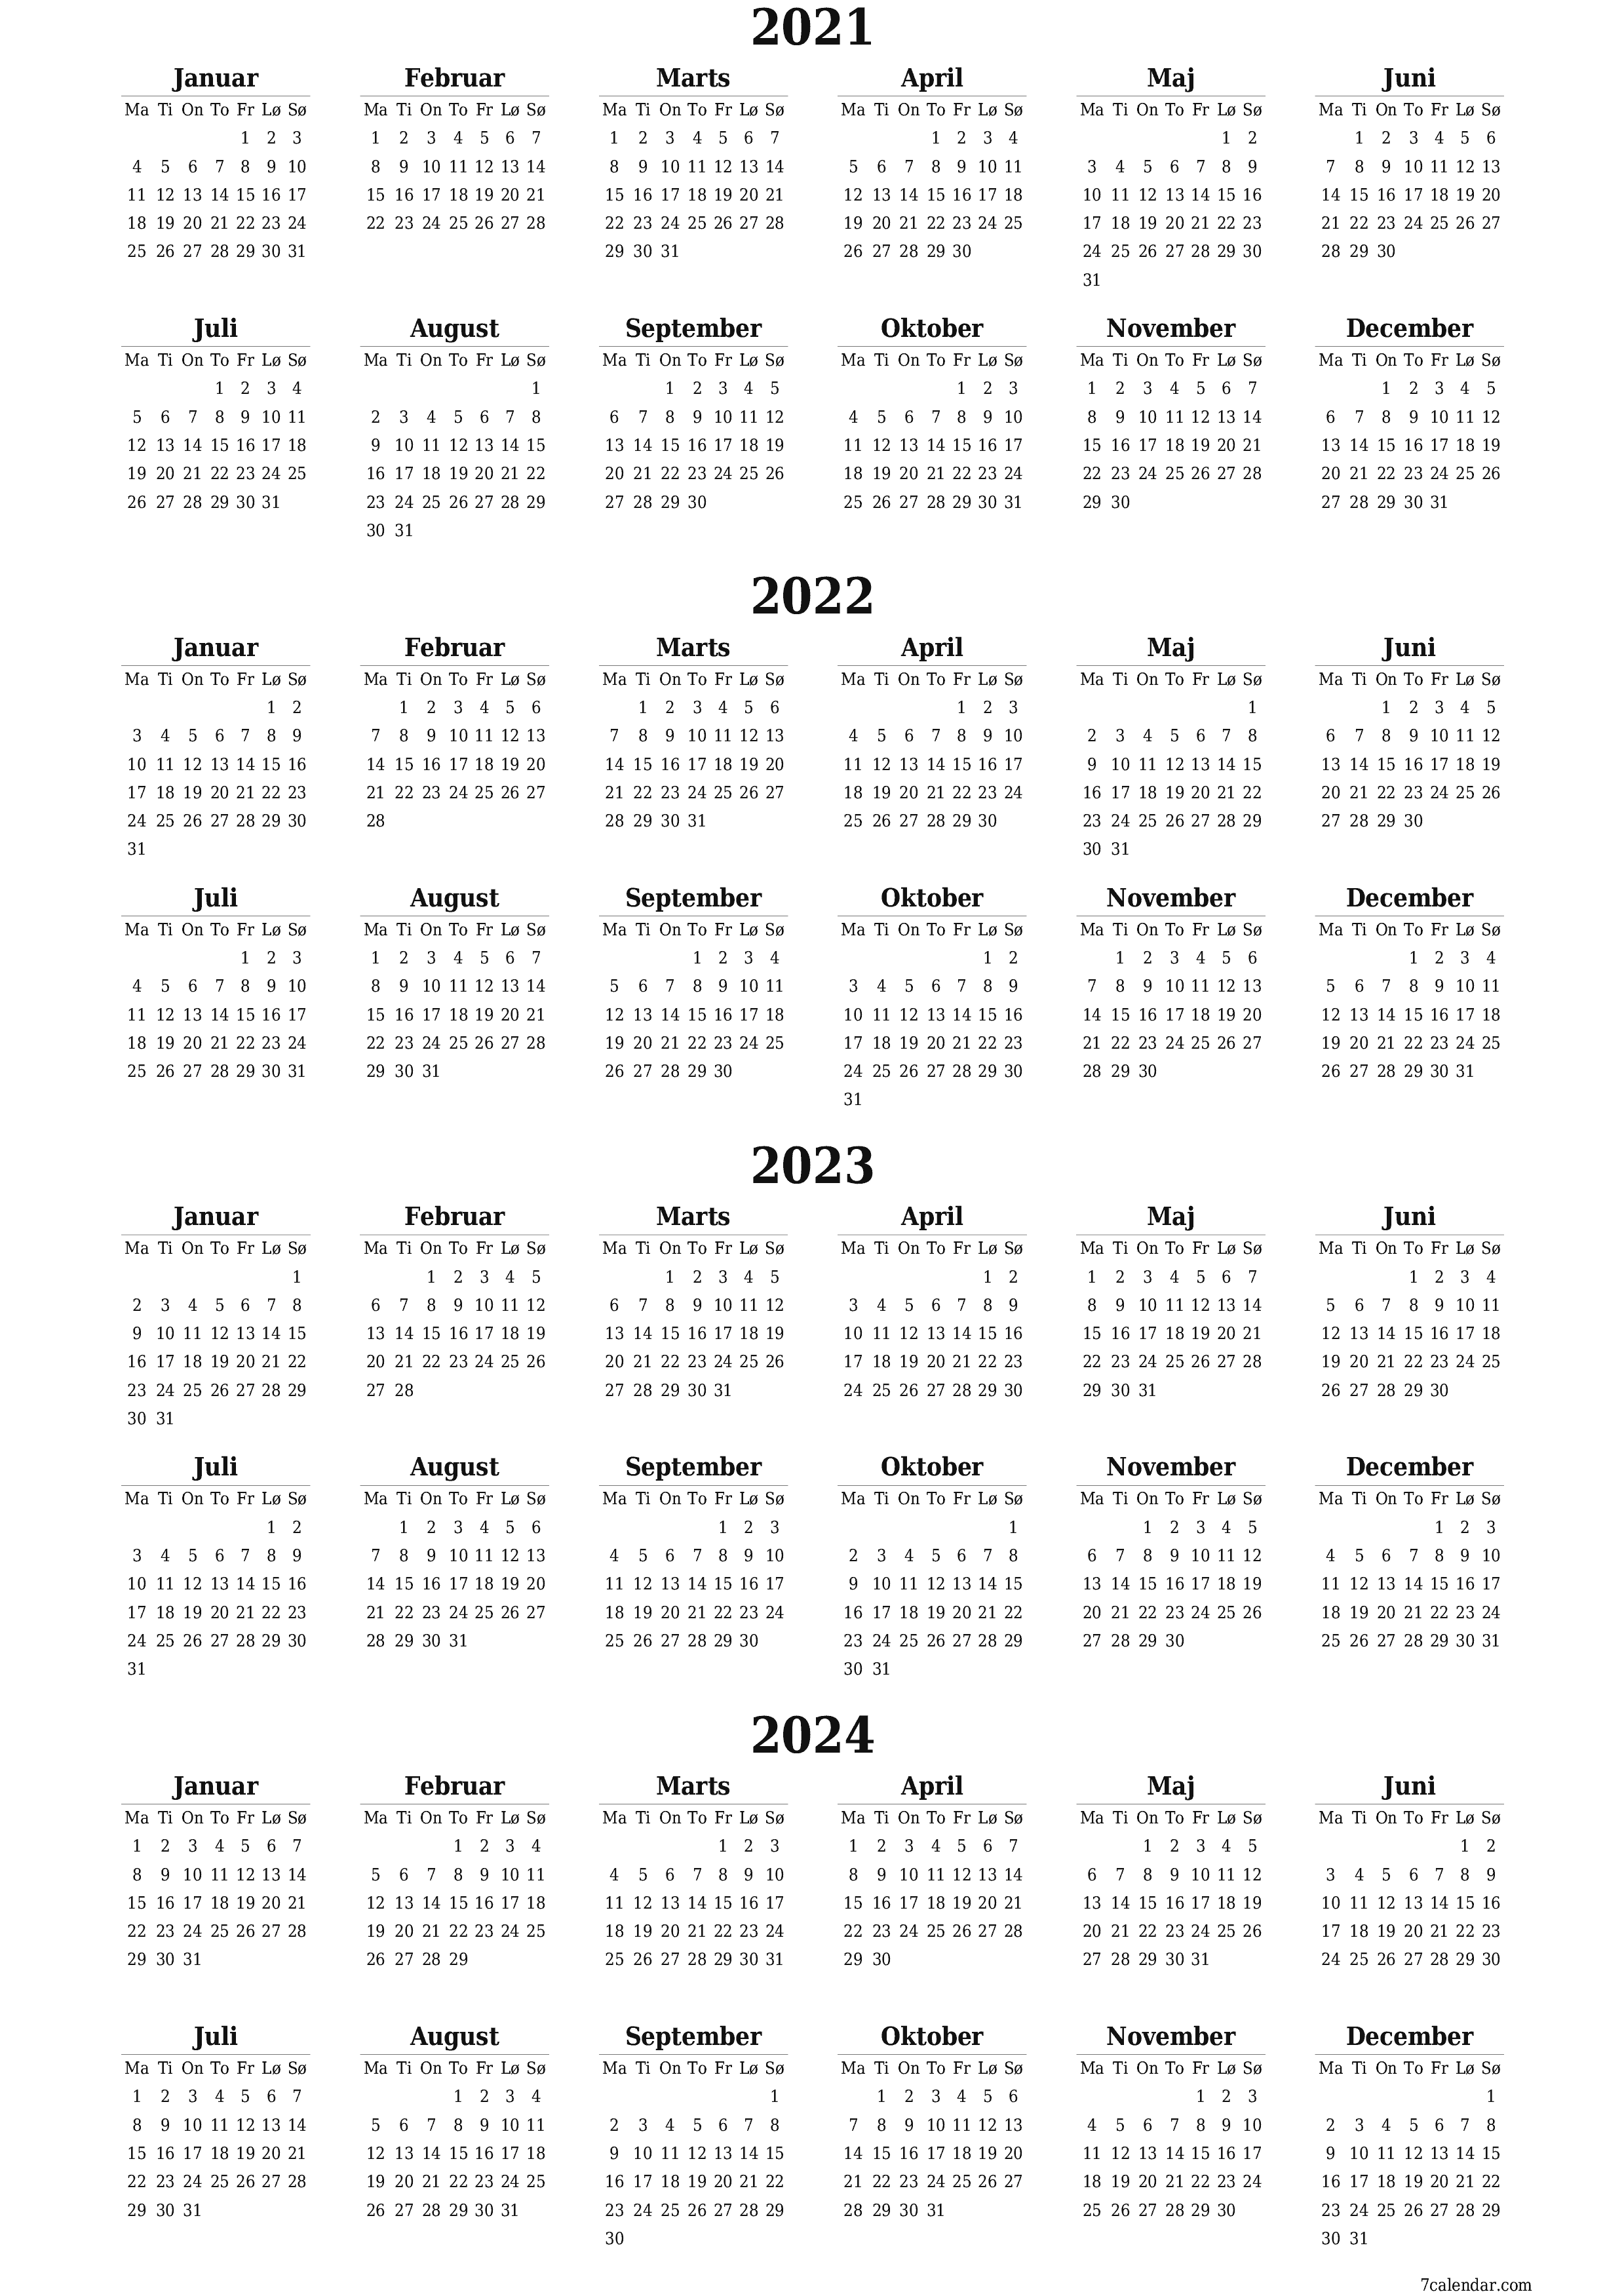 Tom årskalender for år 2021, 2022, 2023, 2024 gem og udskriv til PDF PNG Danish - 7calendar.com